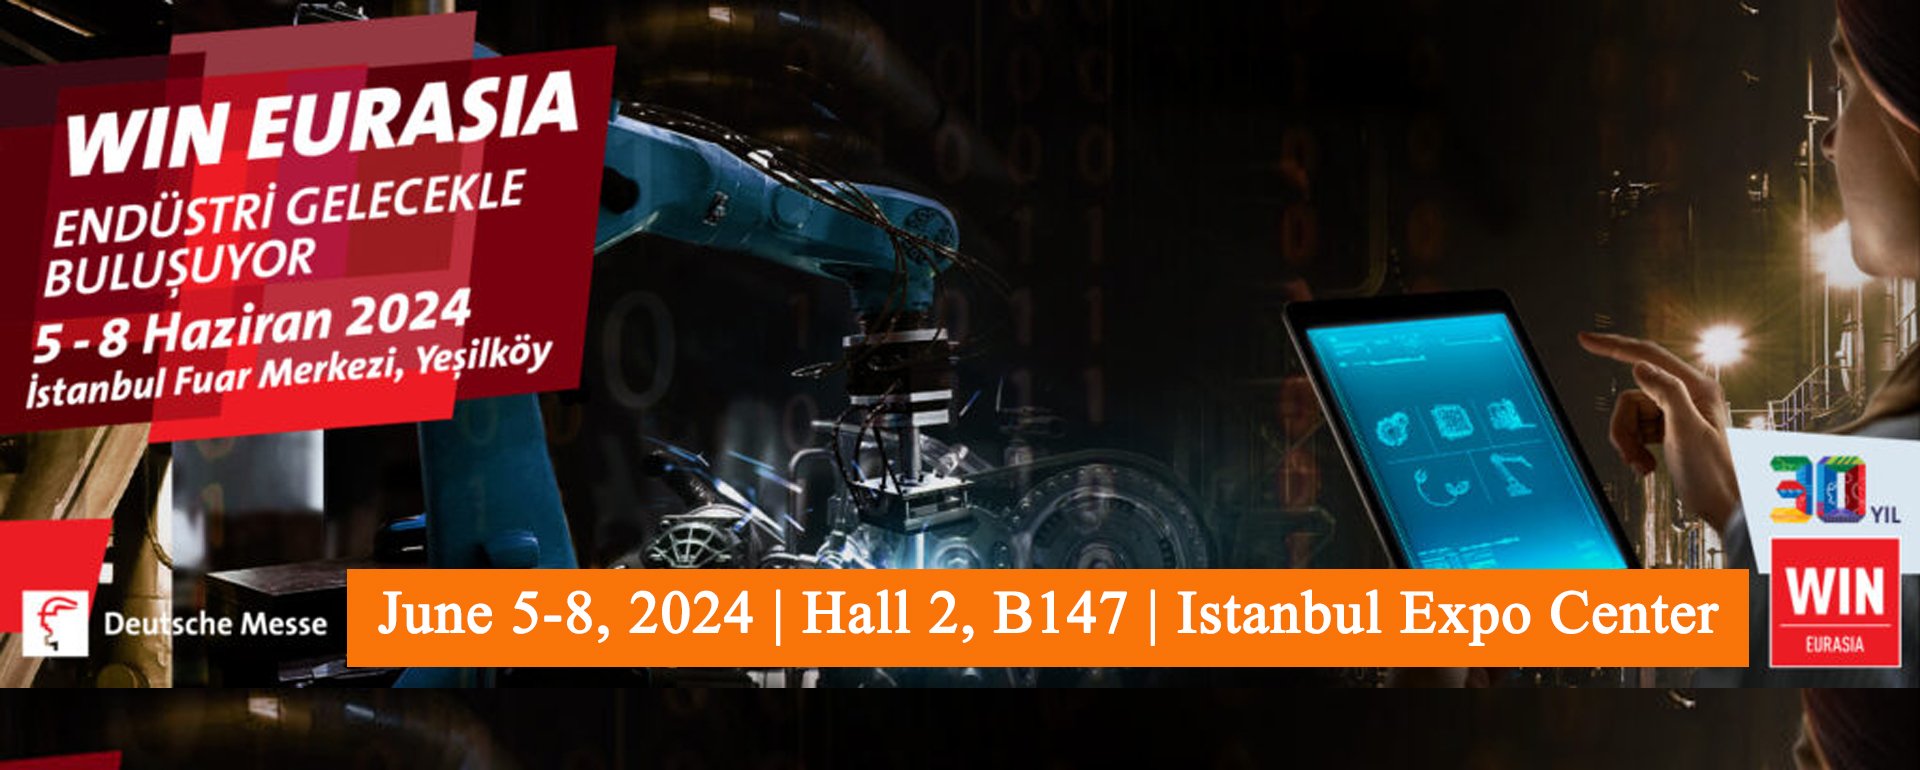 June 5-8, 2024 | Hall 2, B147 | Istanbul Expo Center, Yeşilköy